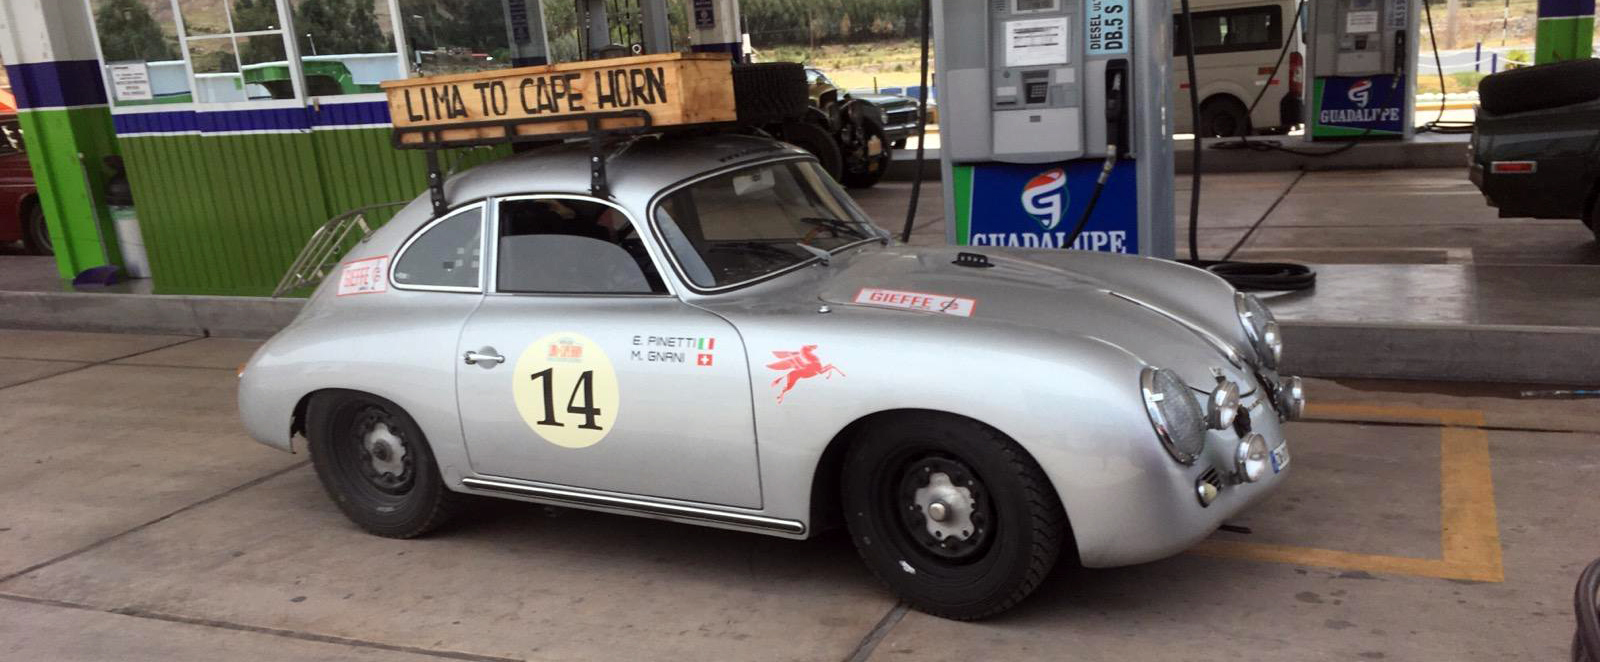 1959 Porsche